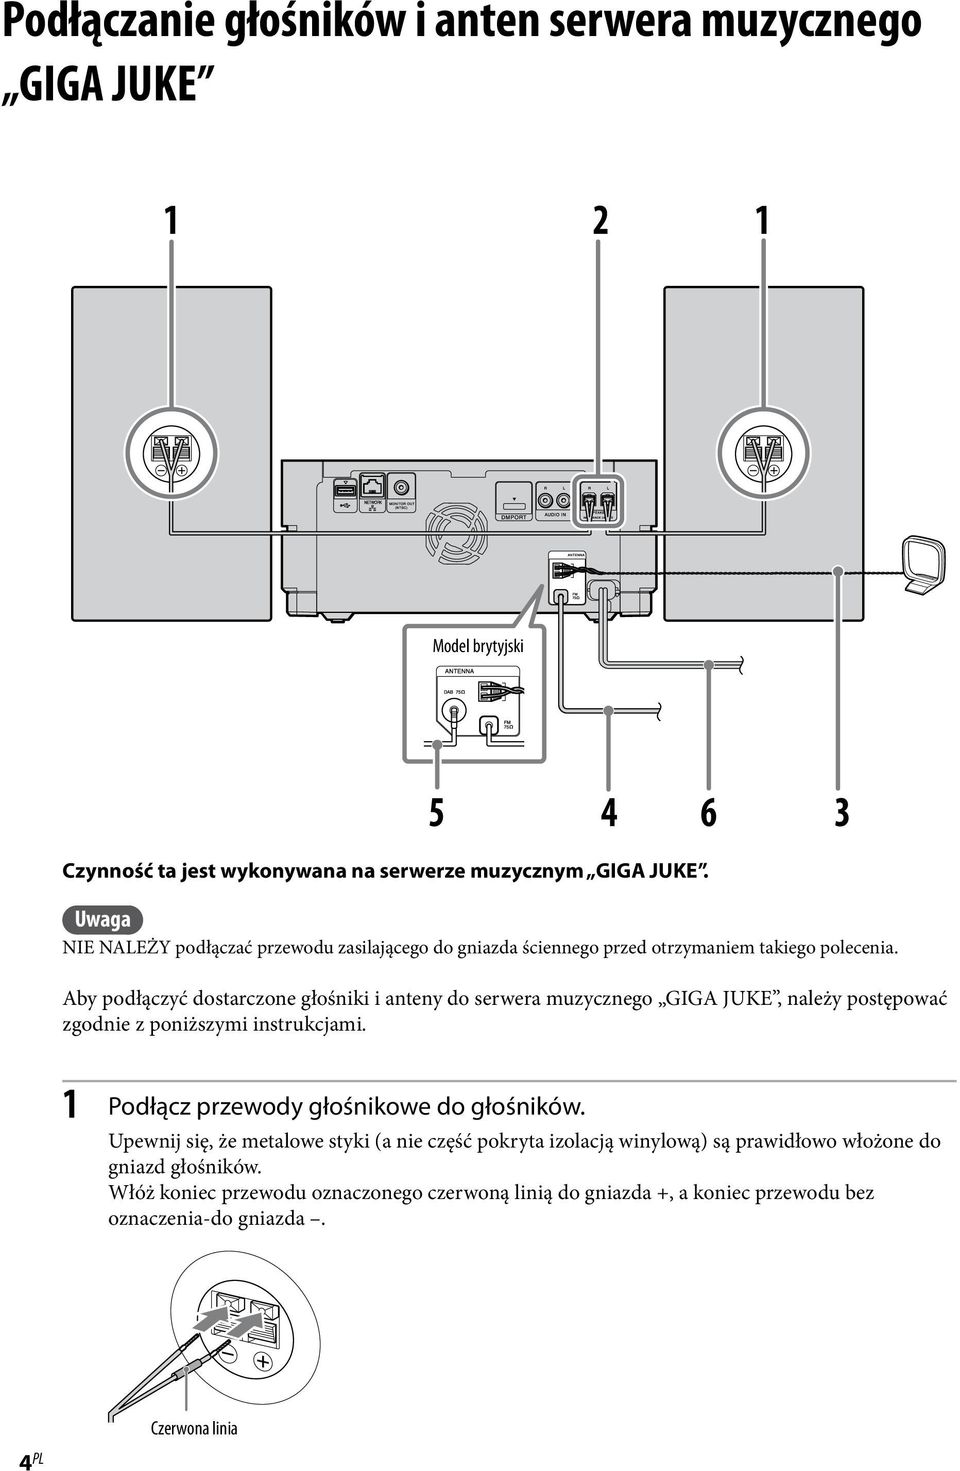 Aby podłączyć dostarczone głośniki i anteny do serwera muzycznego GIGA JUKE, należy postępować zgodnie z poniższymi instrukcjami.